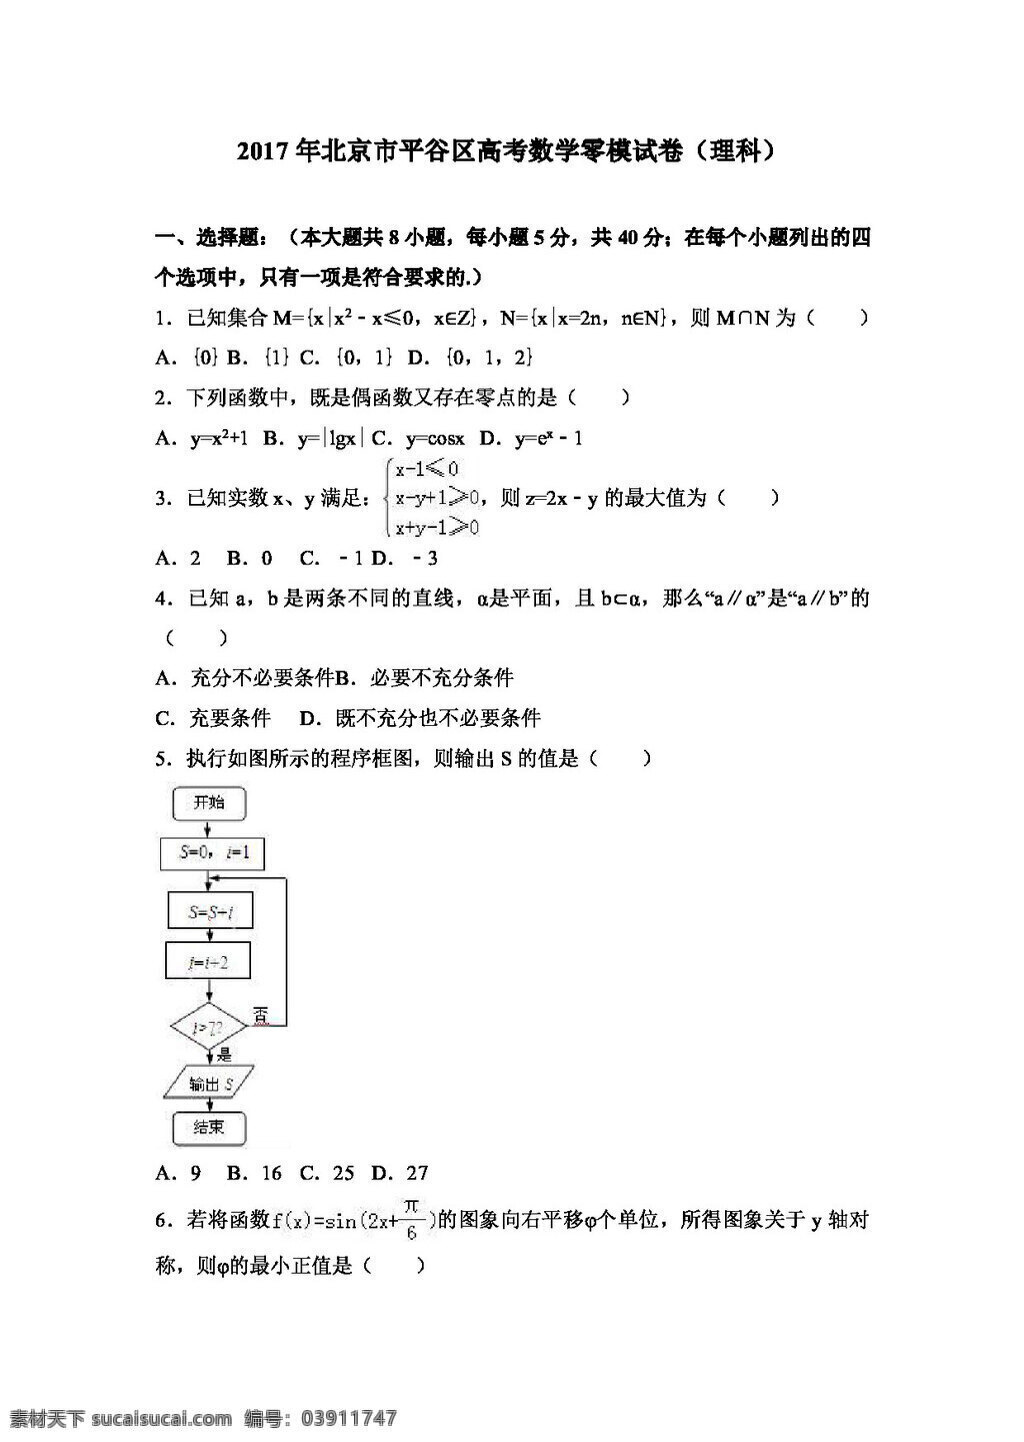 数学 人教 版 2017 年 北京市 平谷区 高考 零 模 试卷 理科 高考专区 人教版